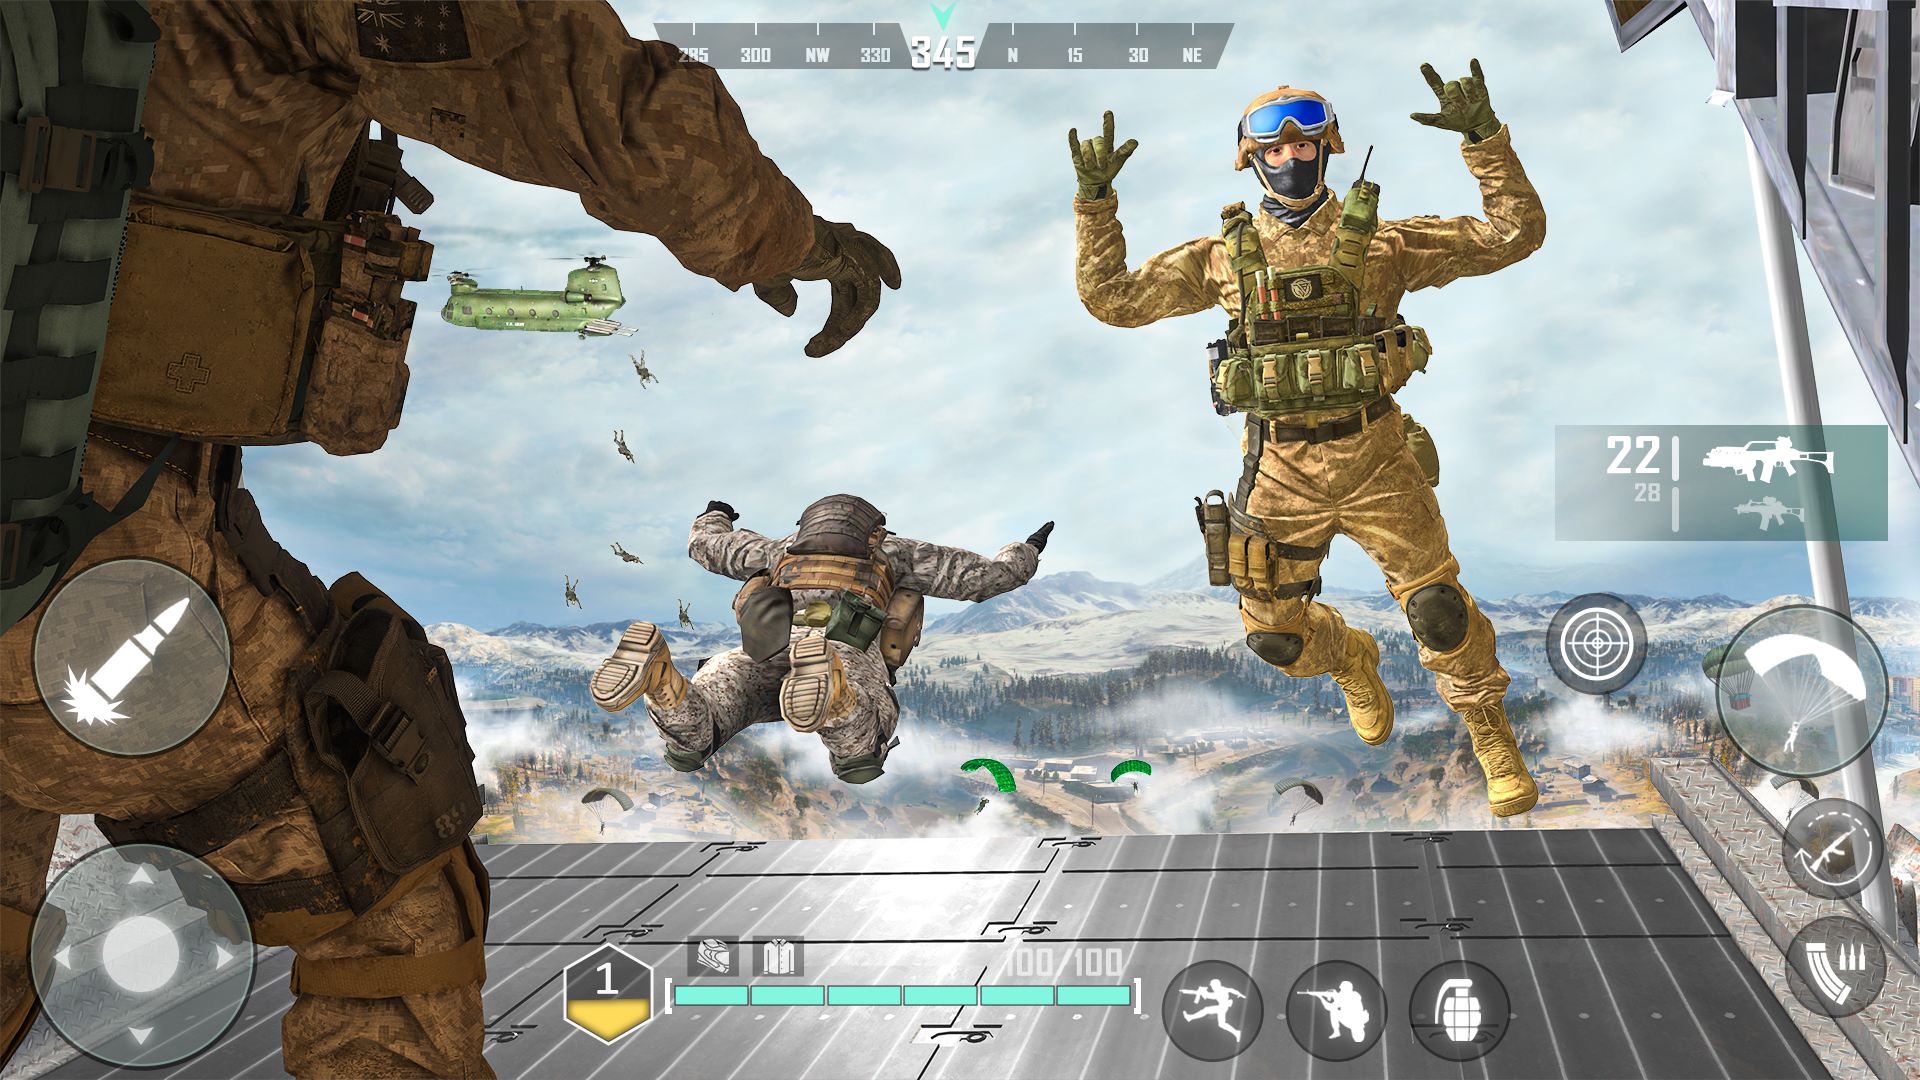 Screenshot 1 of Jogo de armas:jogo de tiro FPS 1.0